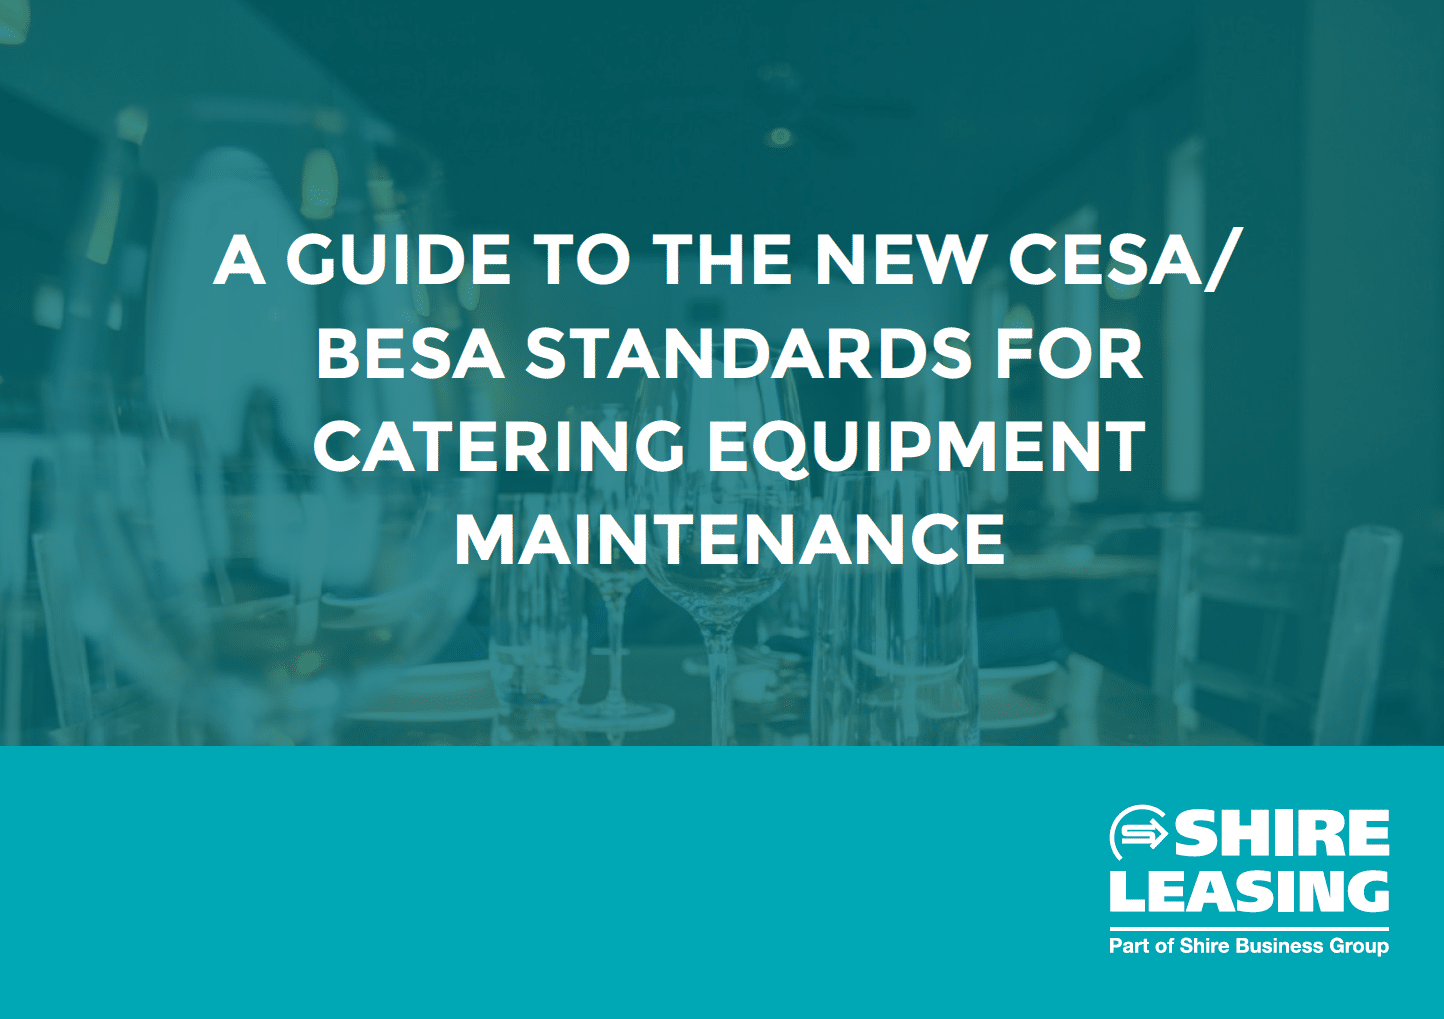 New CESA/BESA standards